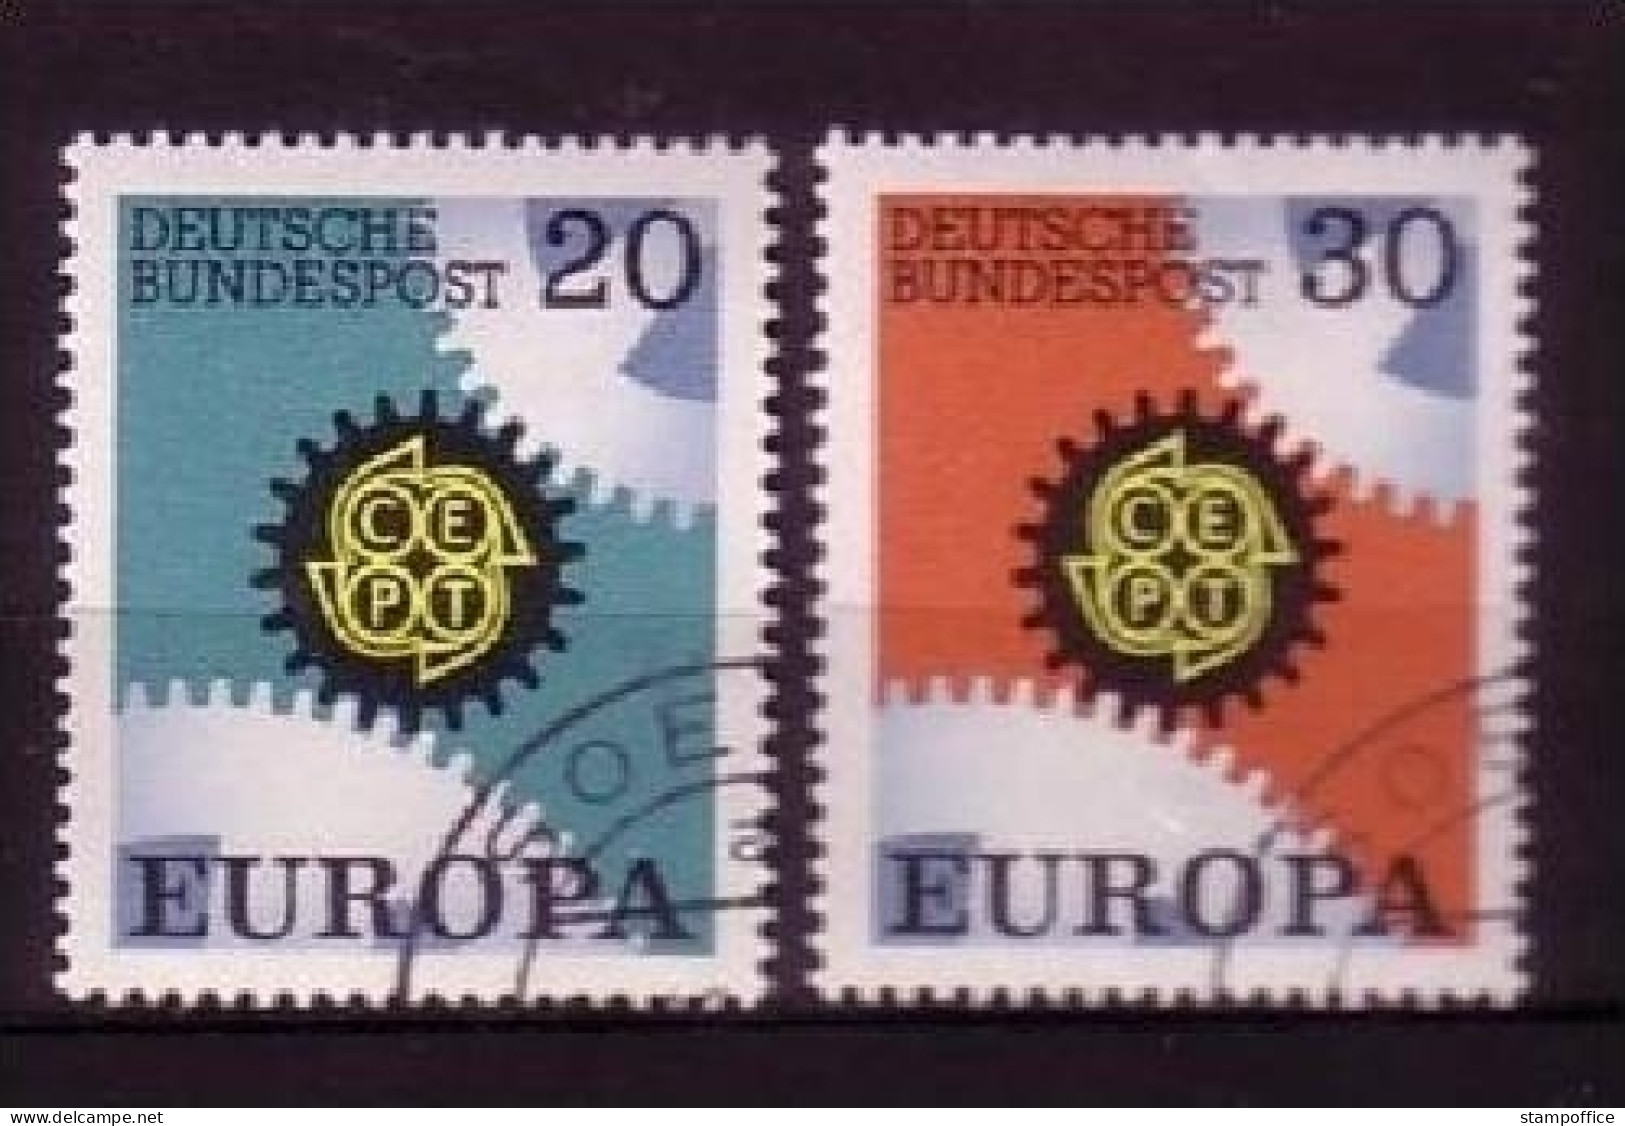 DEUTSCHLAND MI-NR. 533-534 O EUROPA 1967 - ZAHNRÄDER - 1967